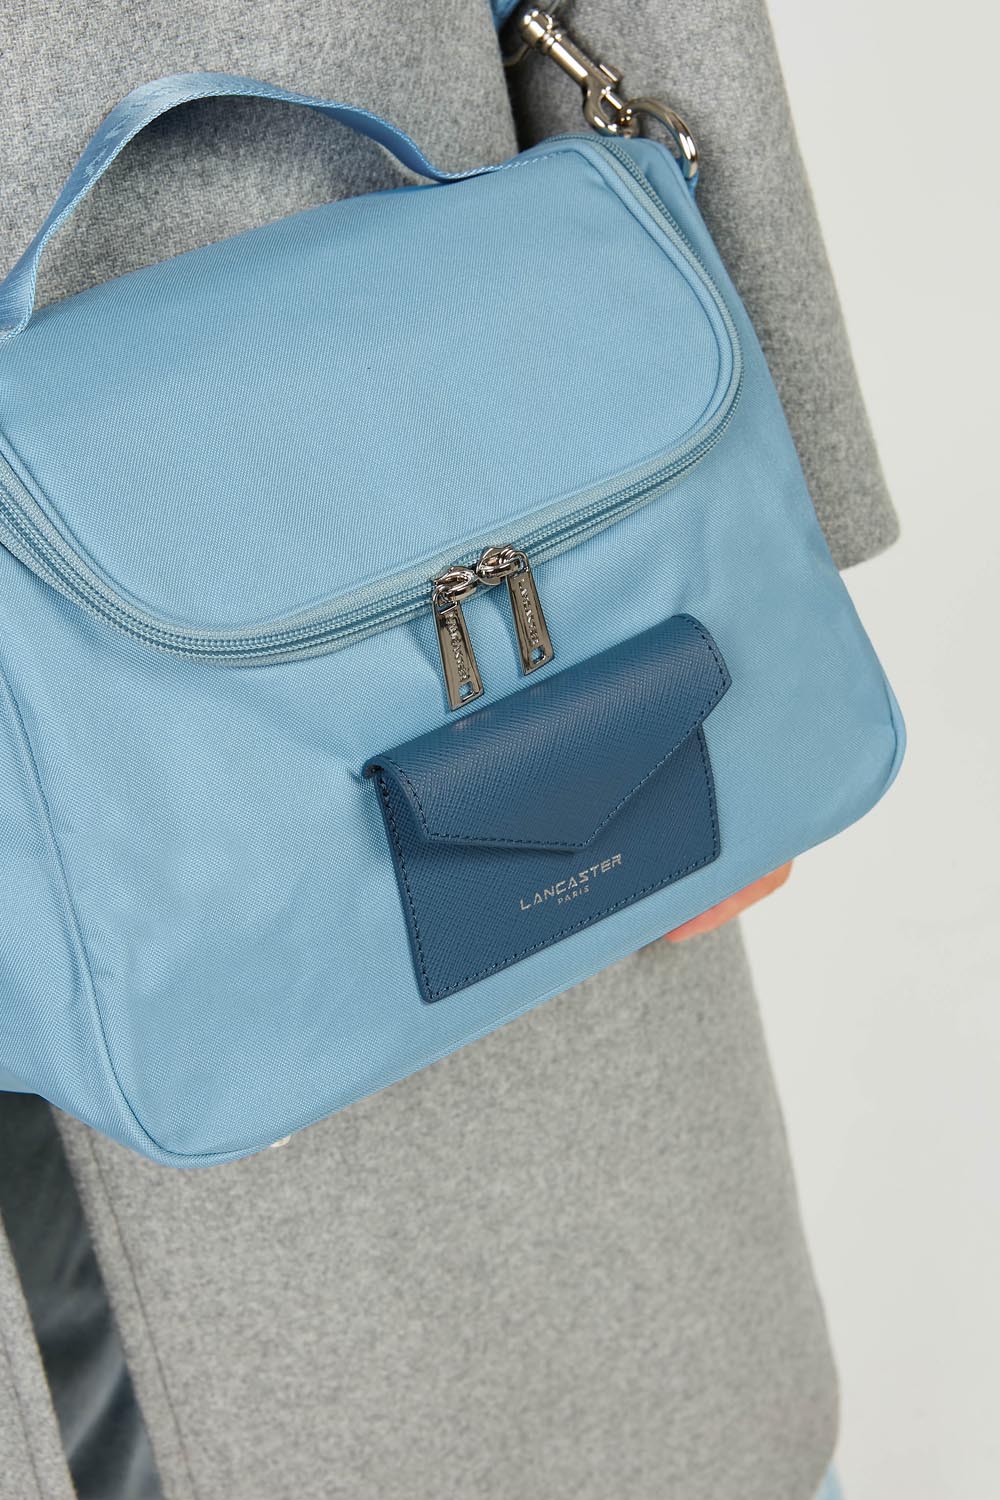 vanity case - smart kba #couleur_bleu-ciel